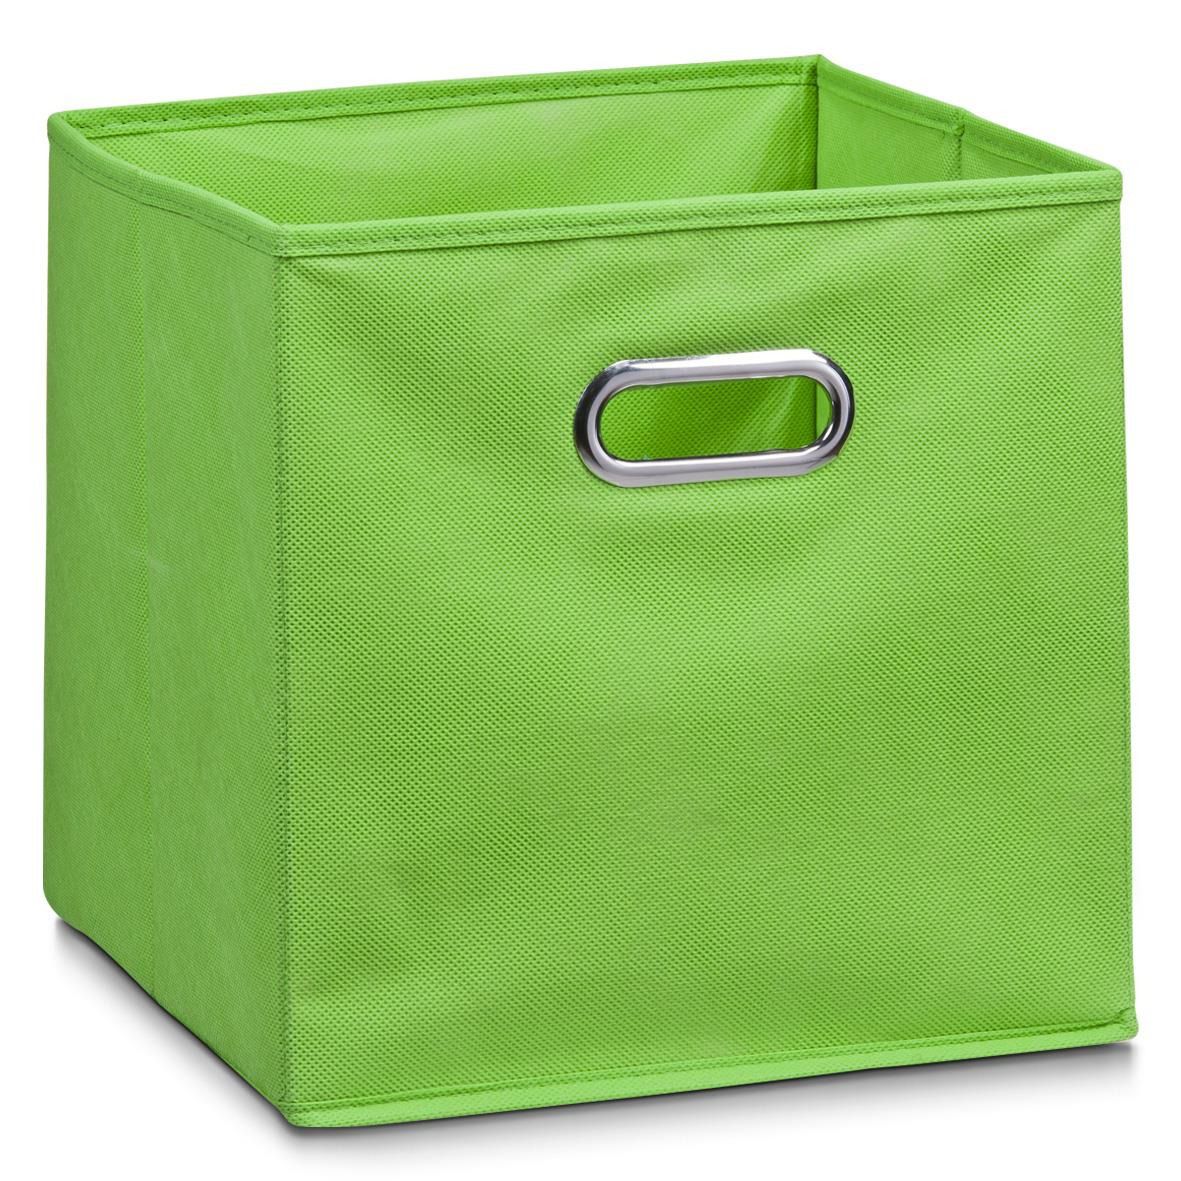 Koš pro skladování potravin, organizér, zelená barva, 32 x 32 x 32 cm, ZELLER - EDAXO.CZ s.r.o.